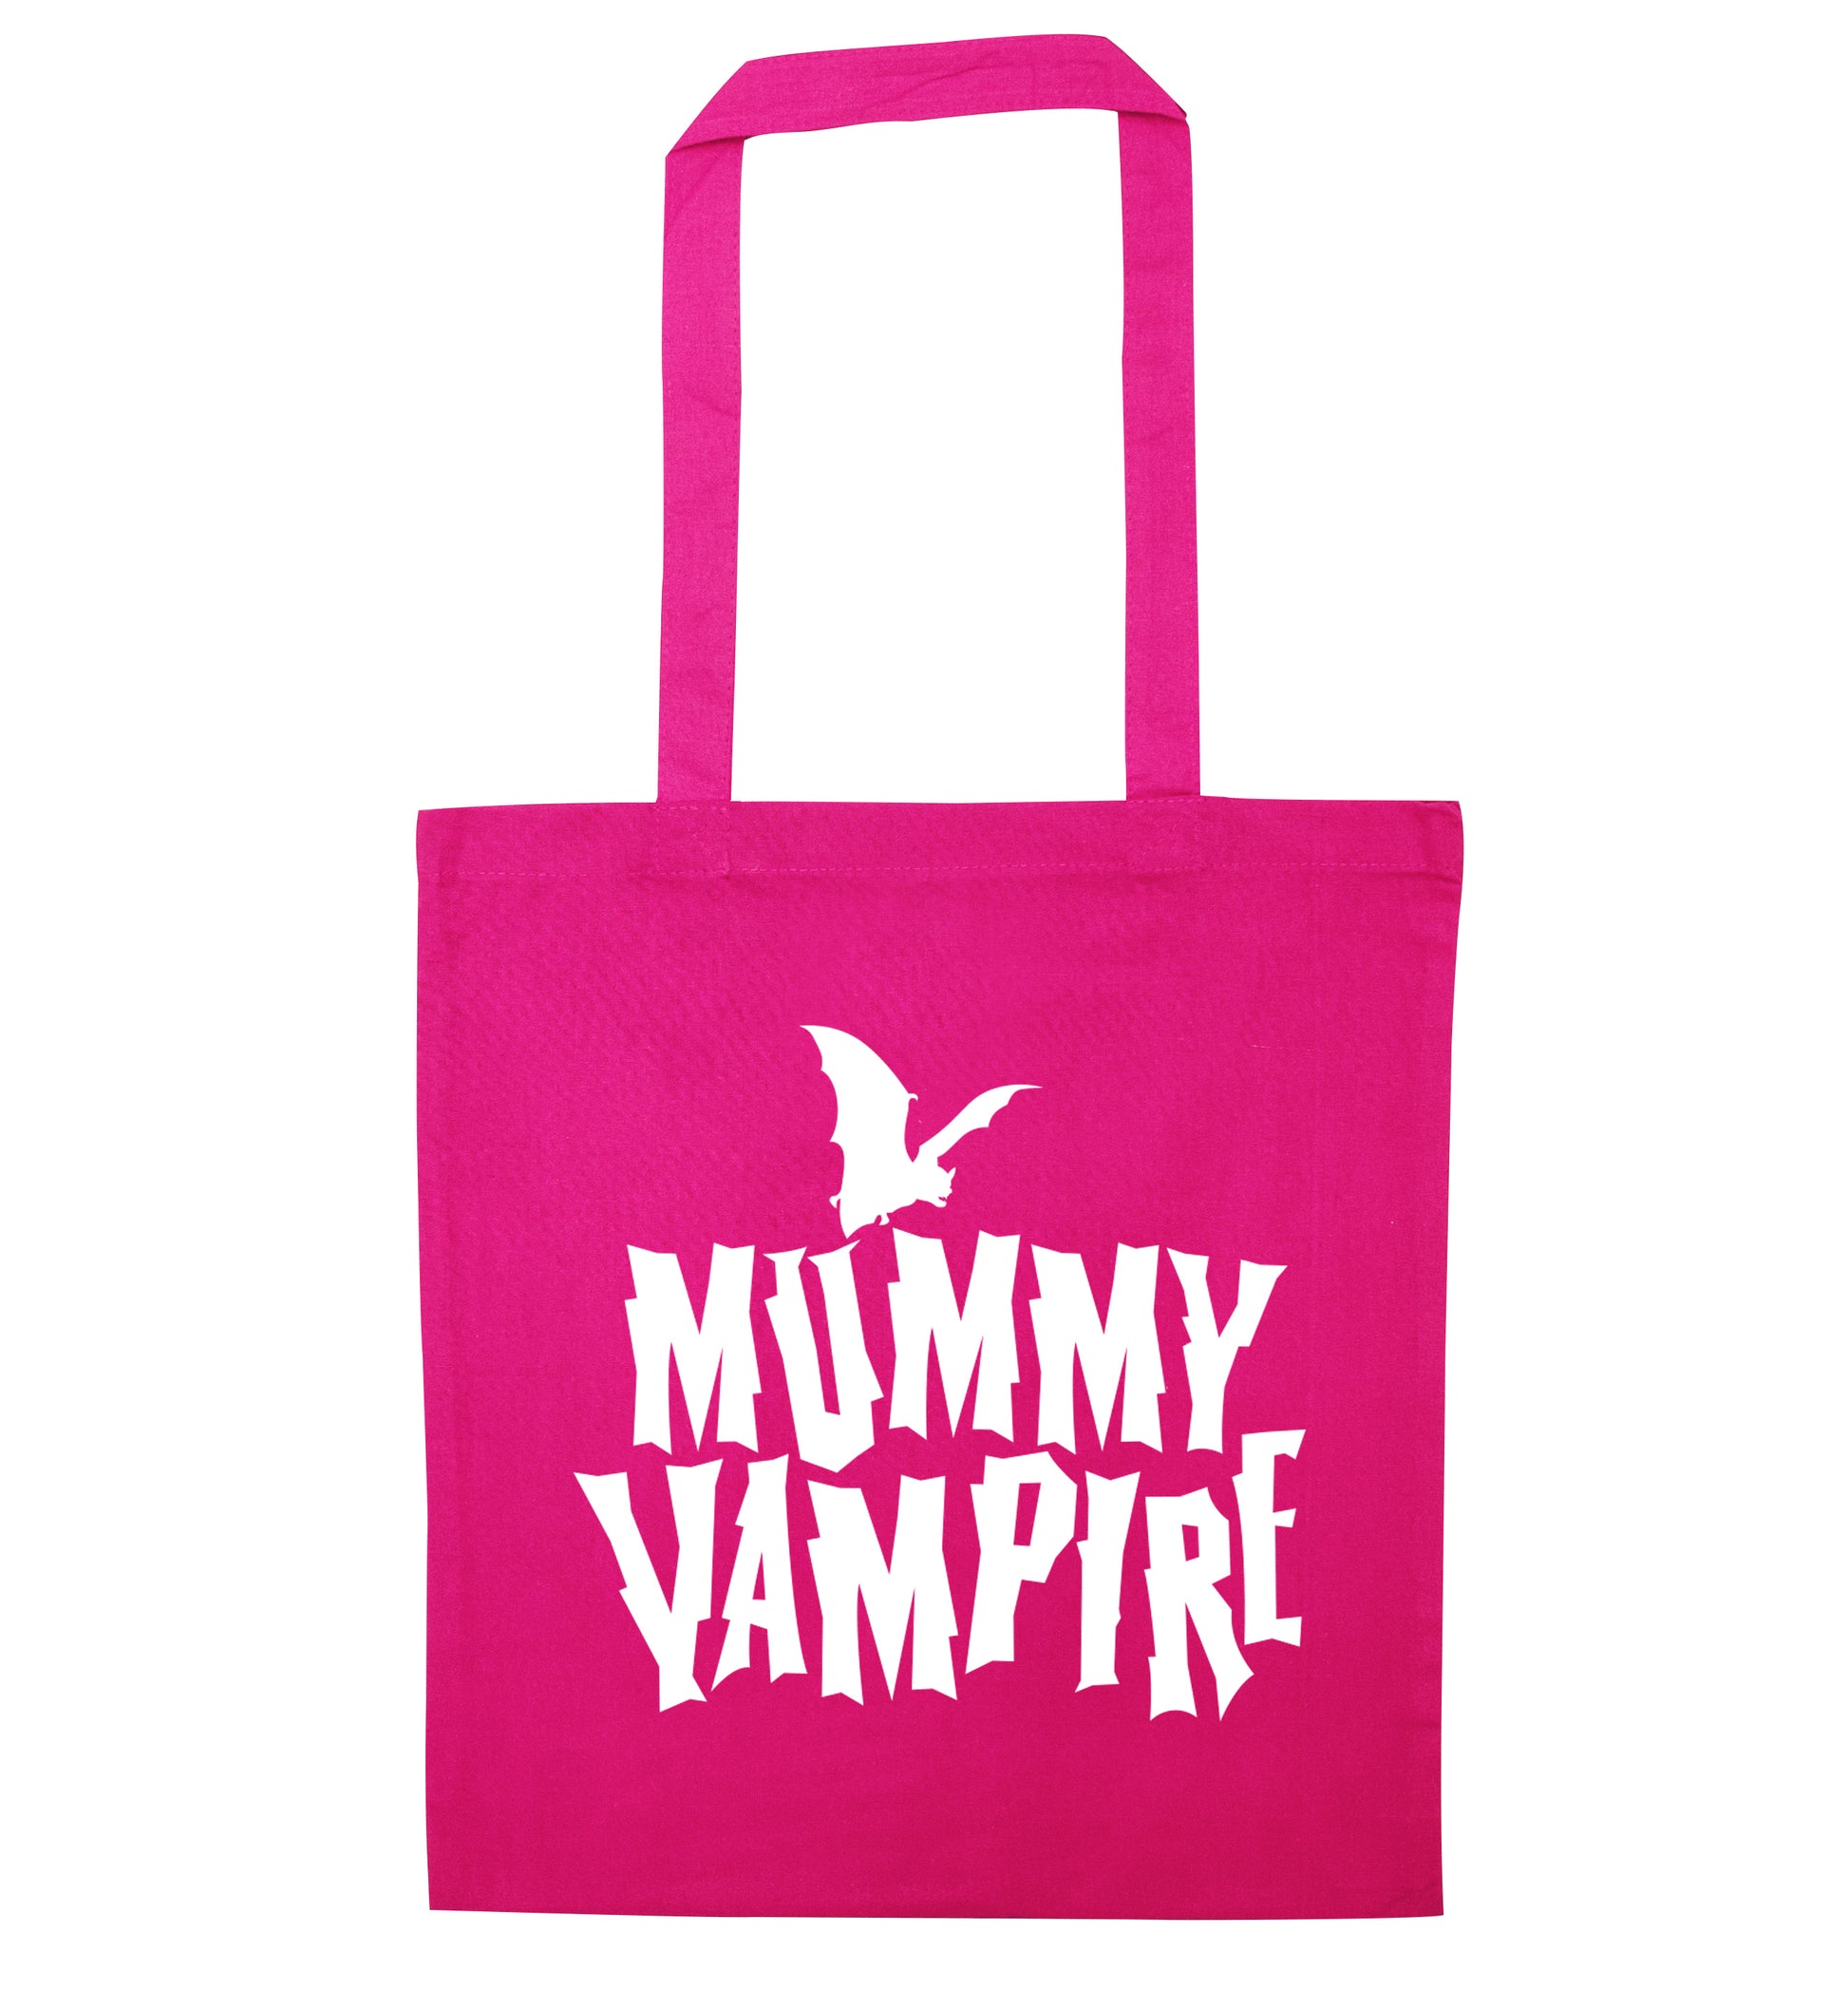 Mummy vampire pink tote bag